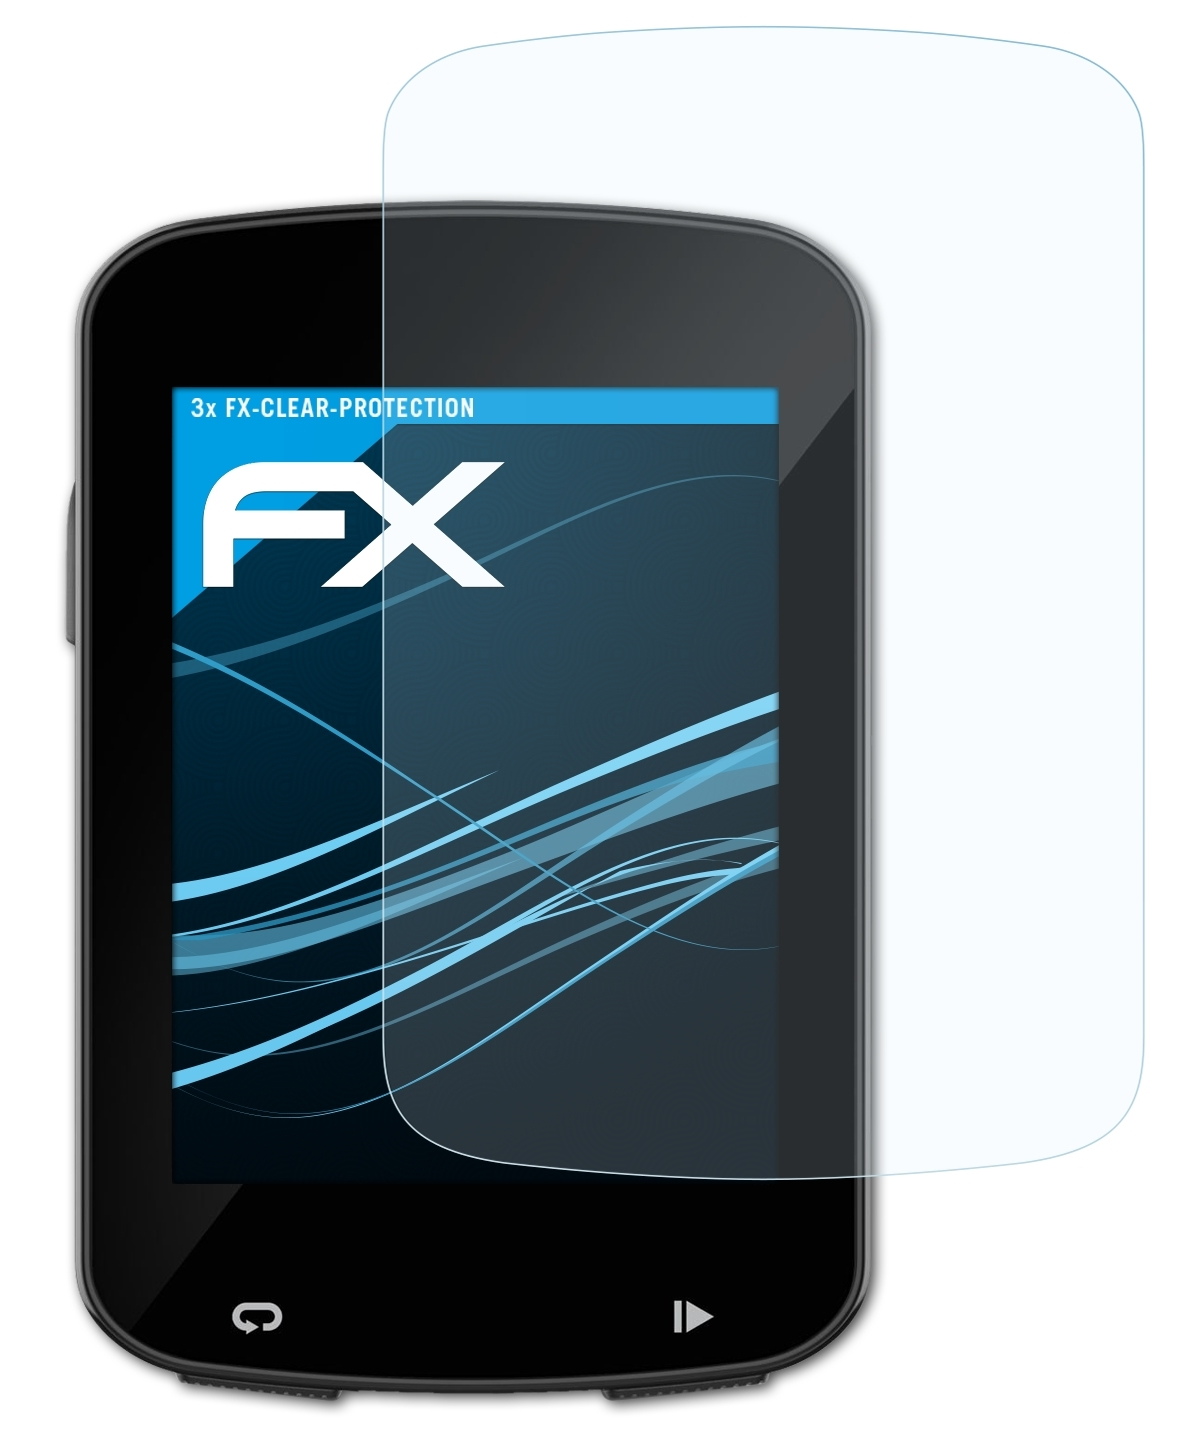 ATFOLIX 3x FX-Clear 820) Edge 820 Displayschutz(für Garmin Explore 